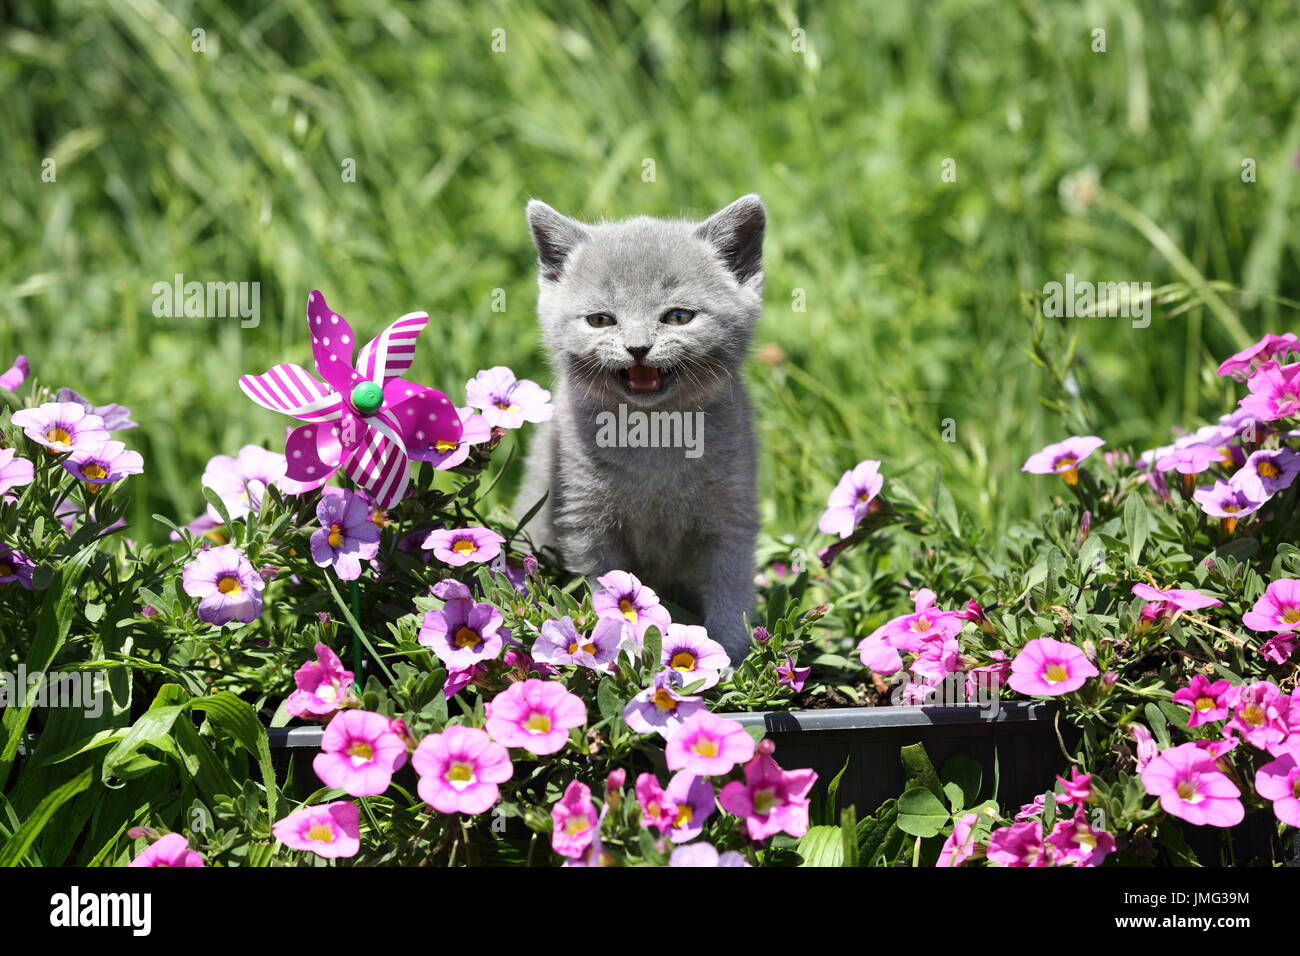 British Shorthair. Chaton gris (6 semaines) chez les pétunias à fleurs permanent alors que meowing. Allemagne Banque D'Images